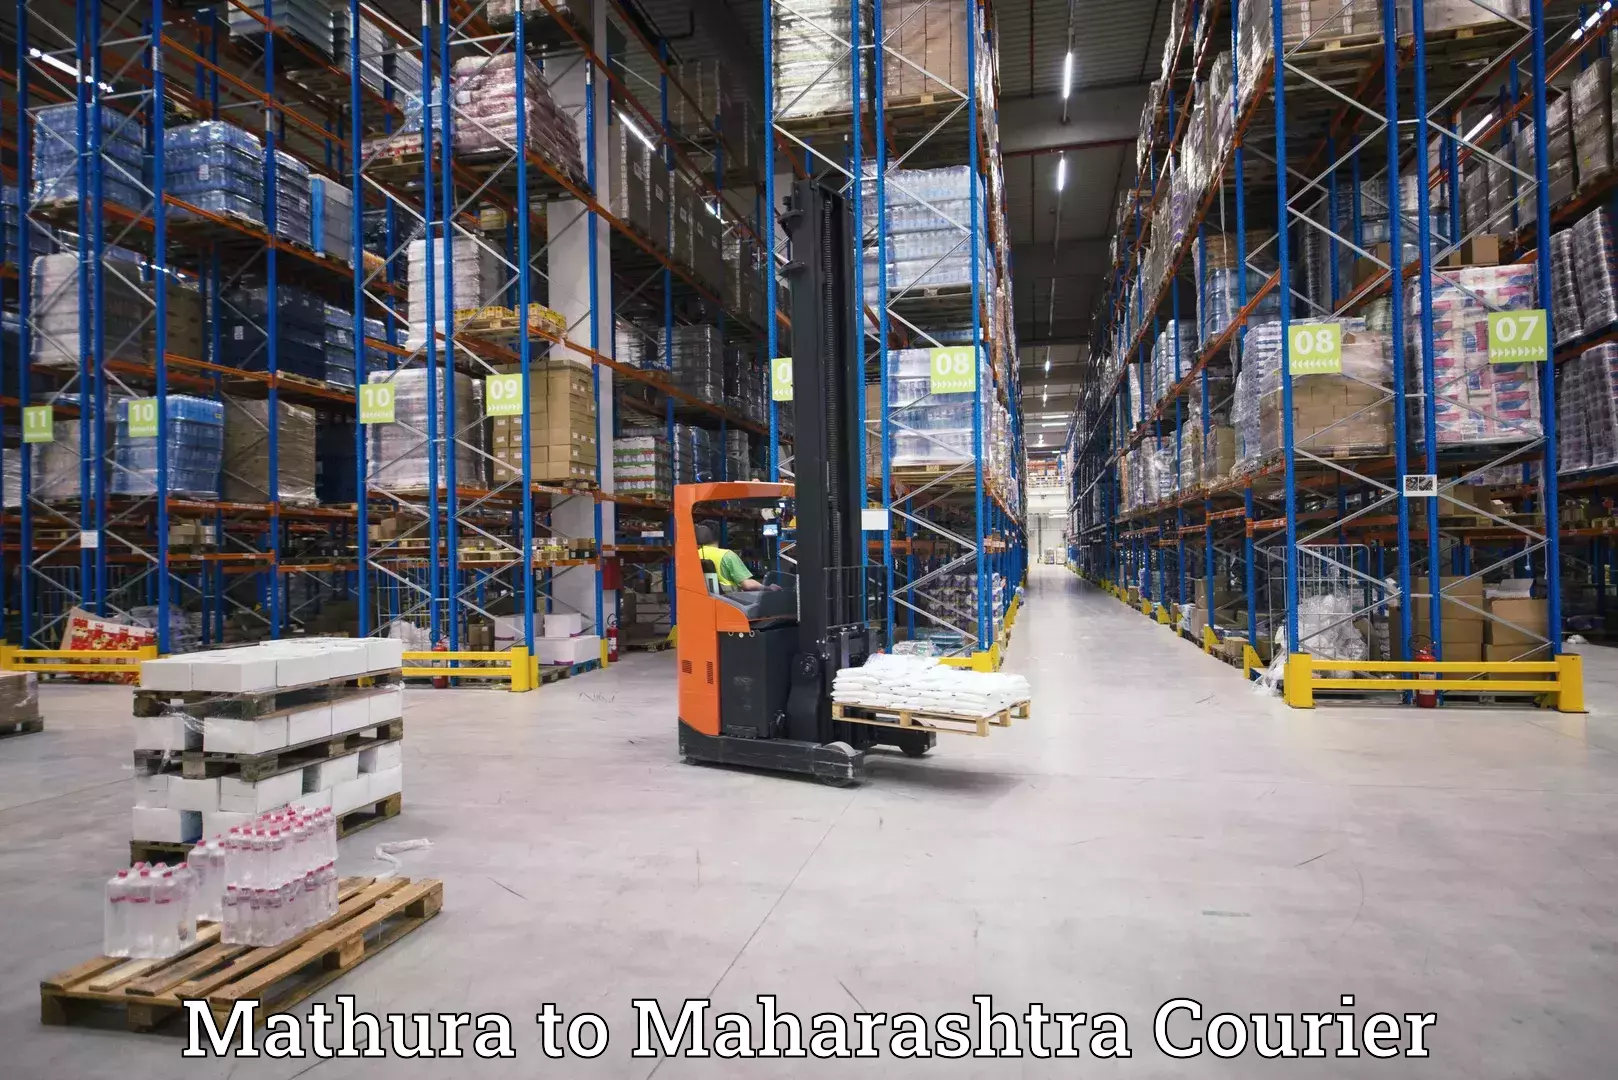 Global logistics network Mathura to Jalgaon